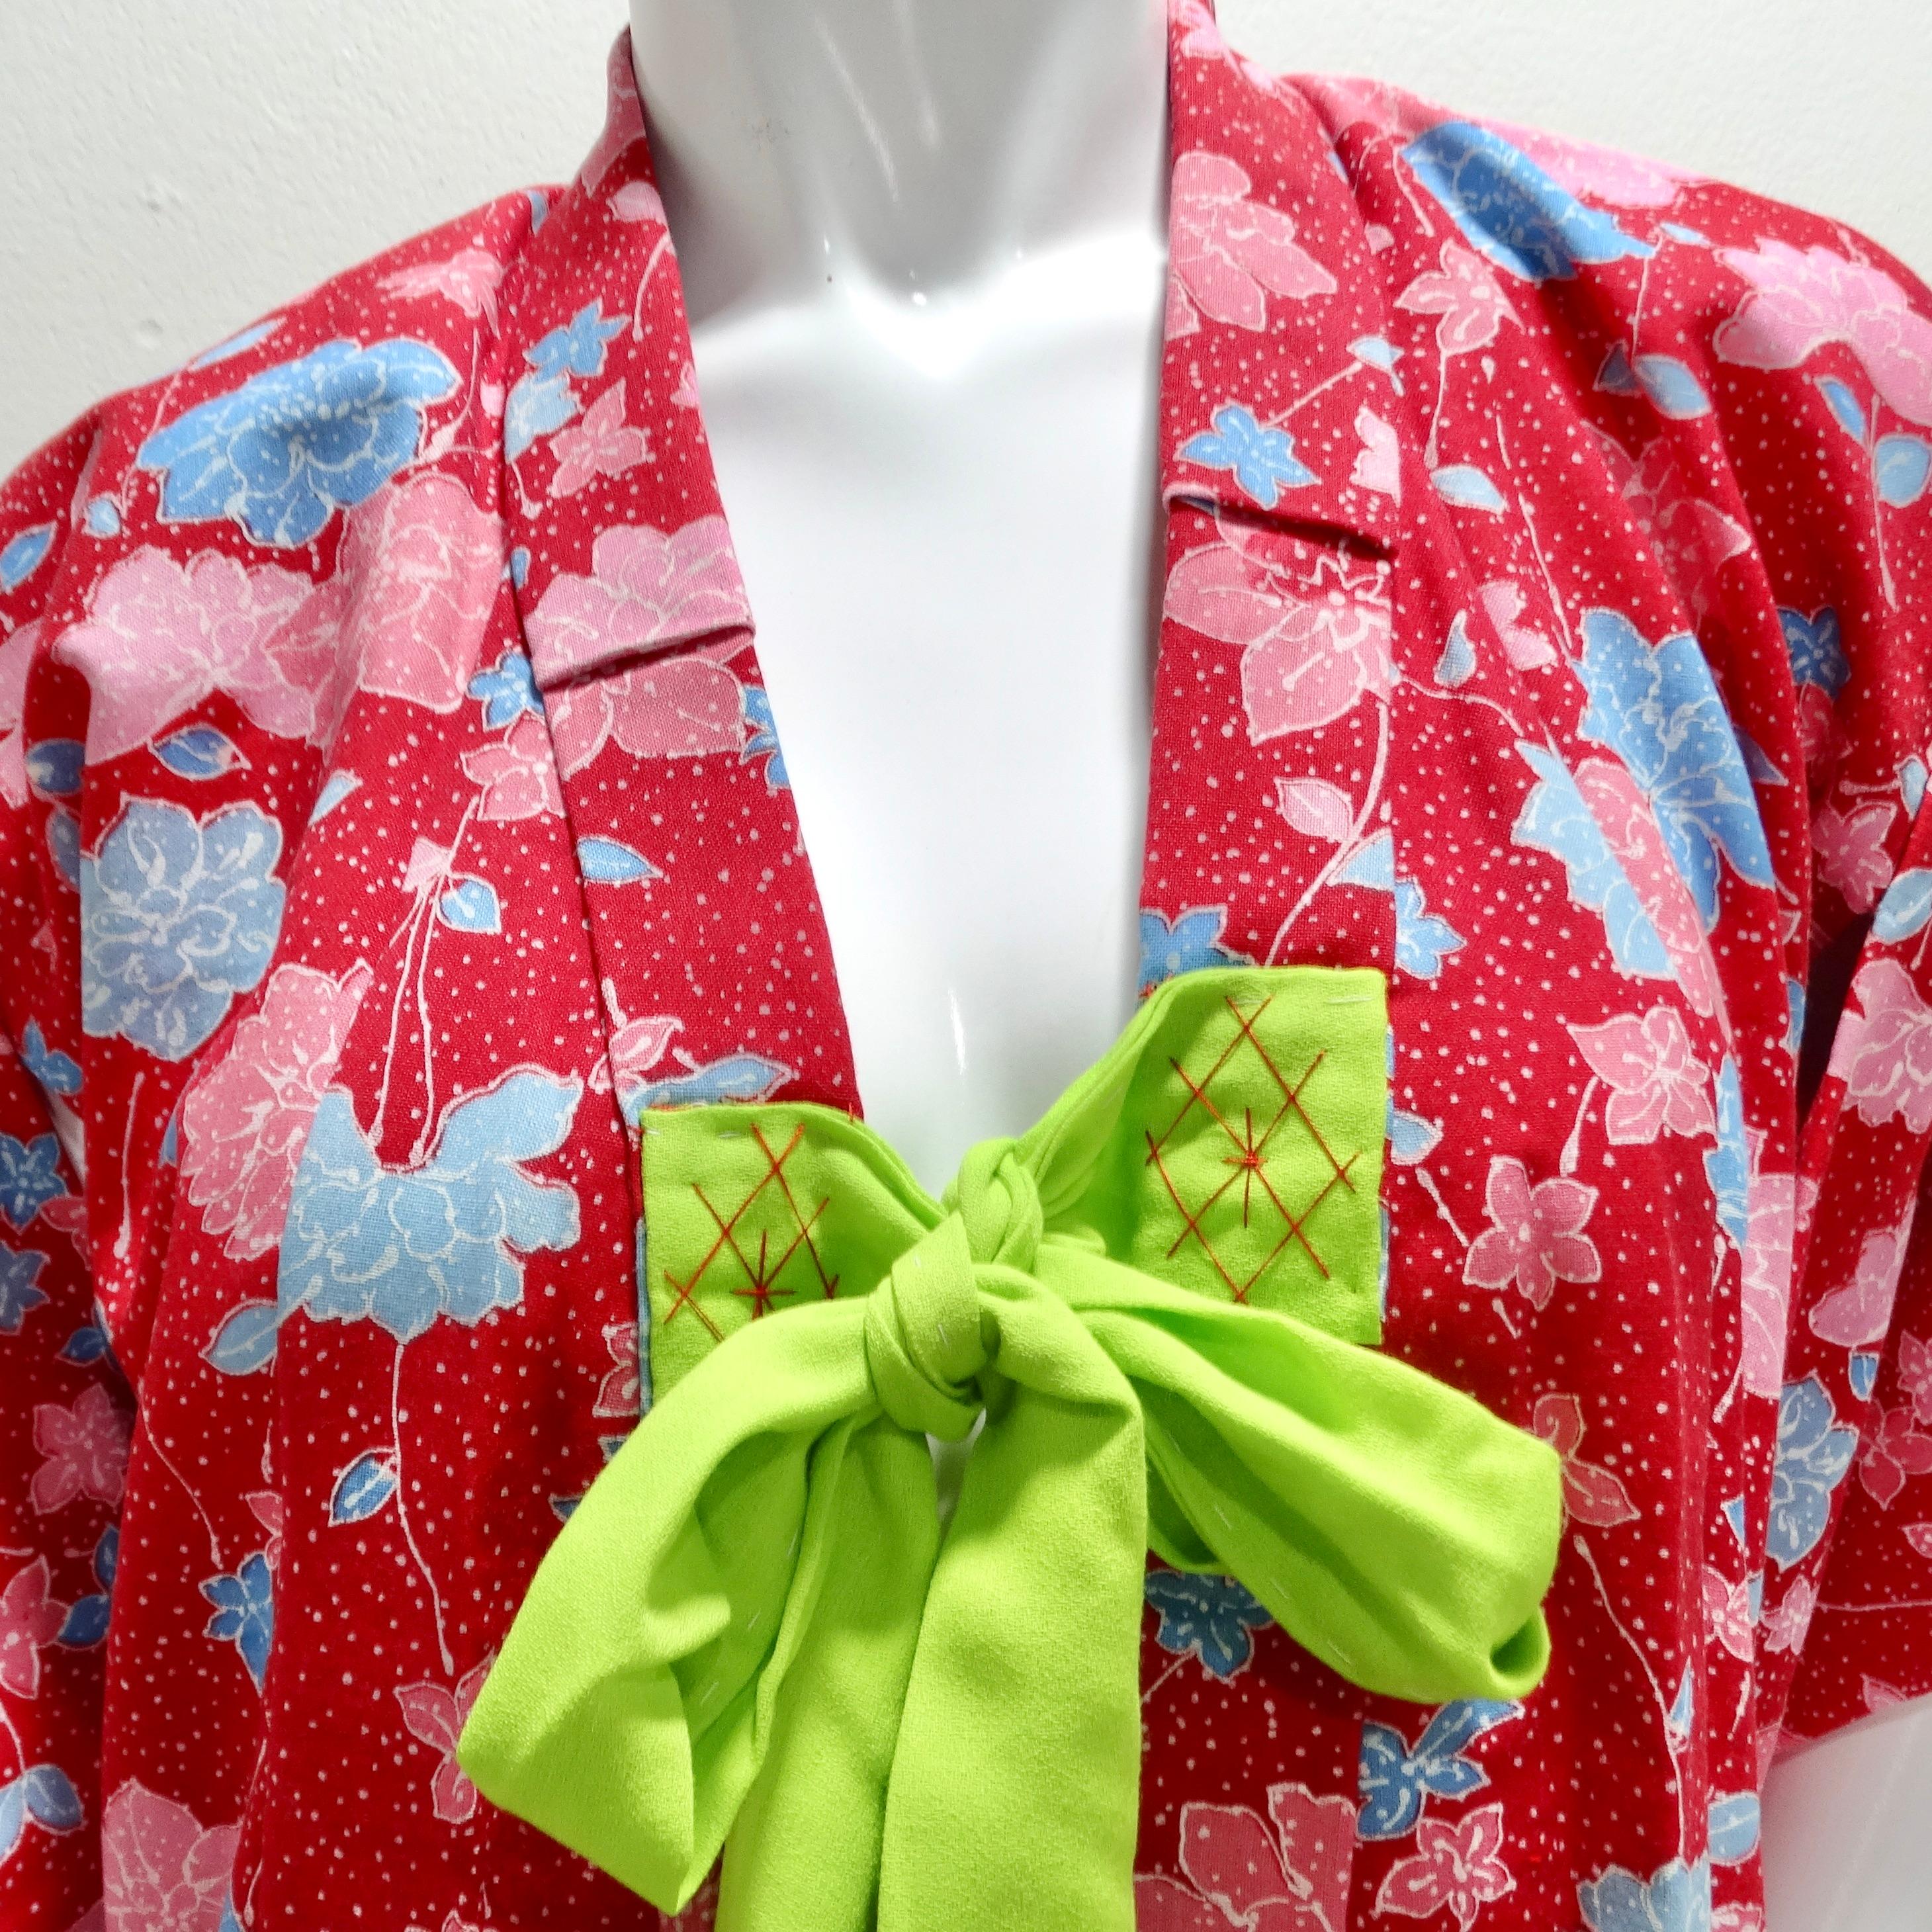 Der handgefertigte japanische Kimono aus roter Baumwolle aus den 1970er Jahren - ein bezaubernder und lebendiger Schatz, der die zeitlose Schönheit der traditionellen japanischen Handwerkskunst verkörpert. Dieser handgefertigte Kimono ist mehr als